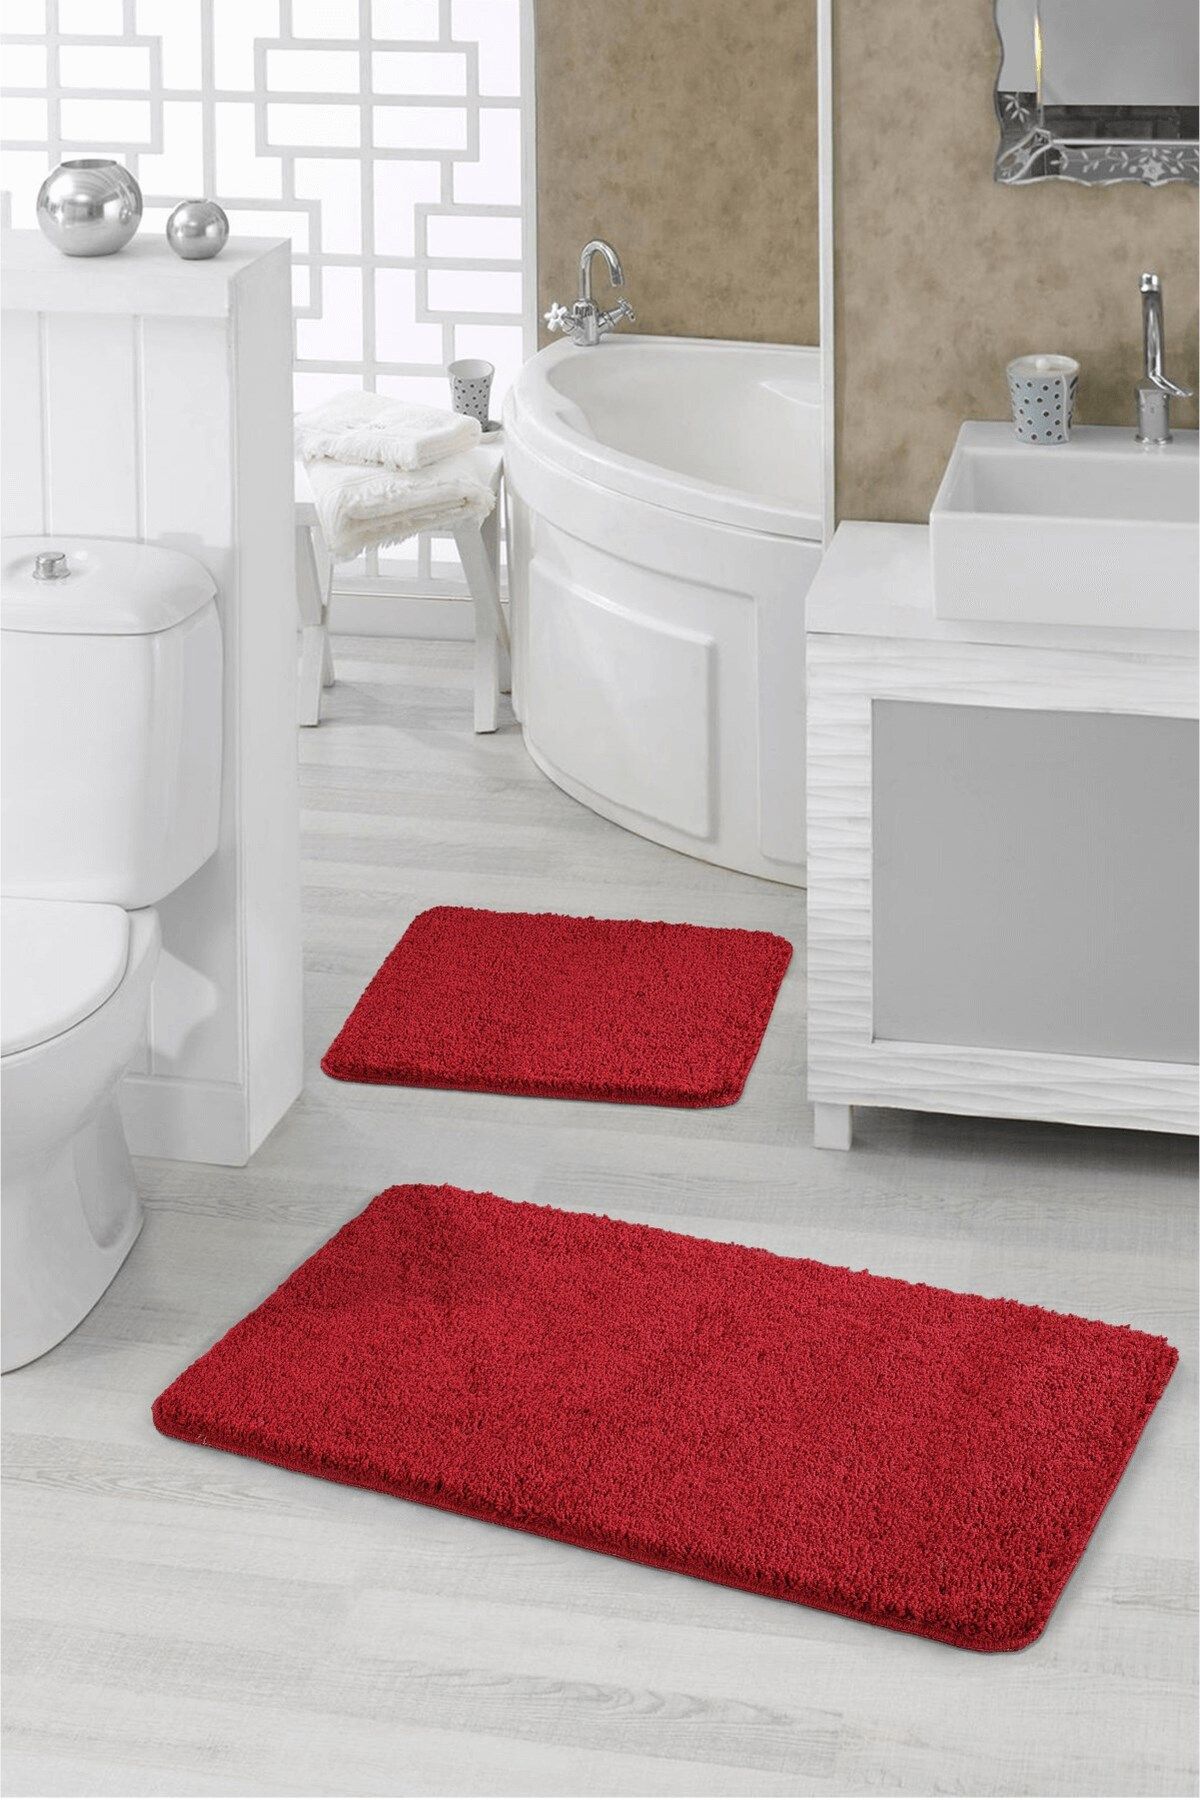 EUROBANO Kırmızı Shaggy Doğal Kaymaz Tabanlı 2'li Set Banyo Halısı Paspas Seti 60x100